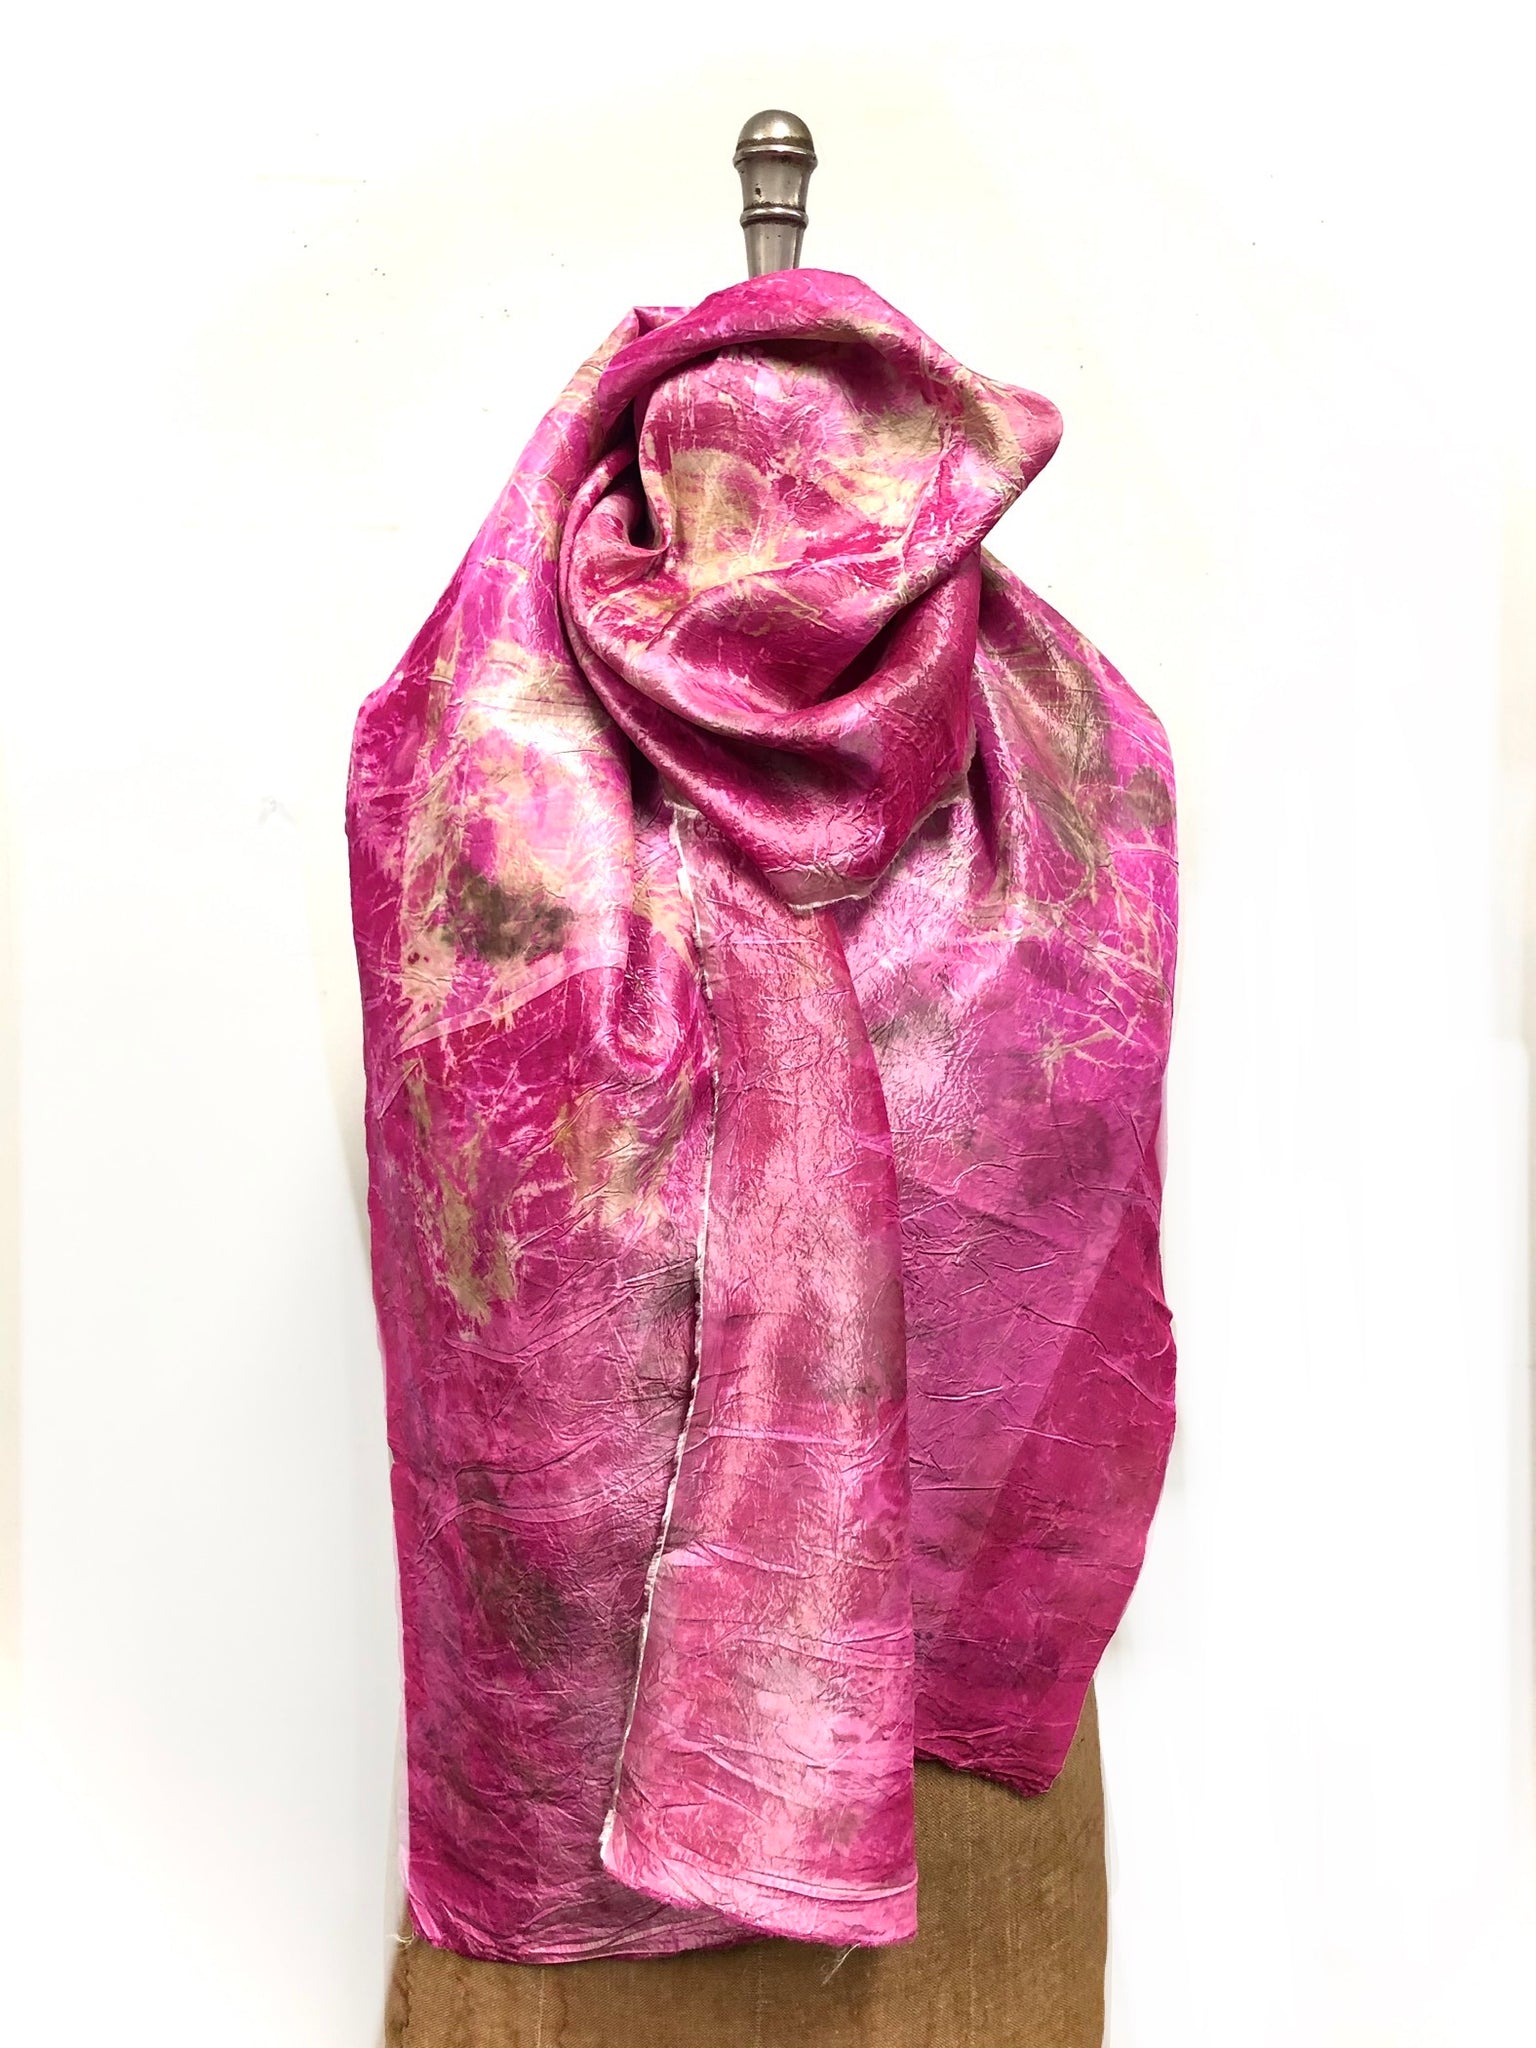 Ecoprinted silk scarf #28